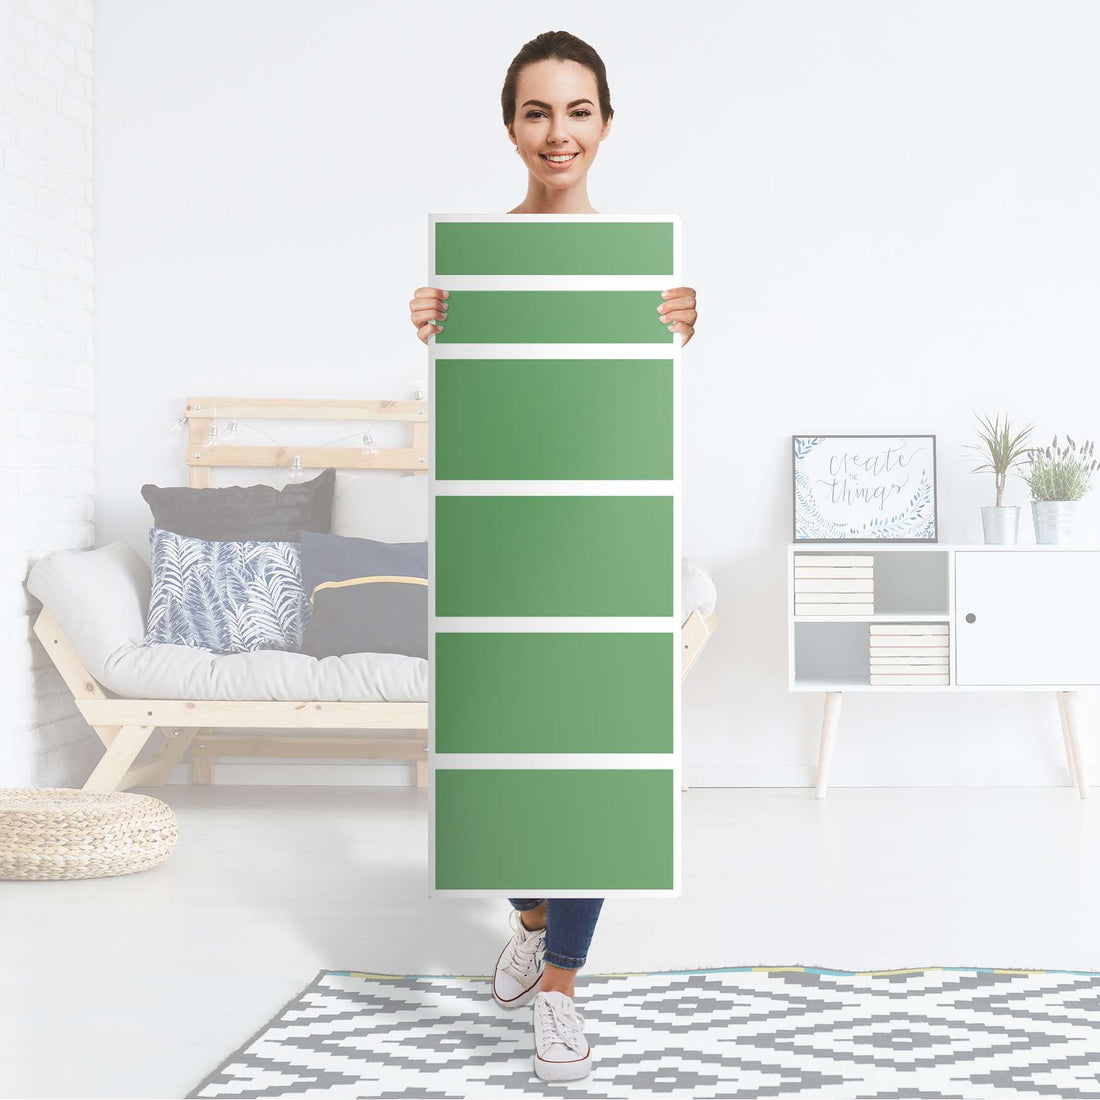 Klebefolie Grün Light - IKEA Malm Kommode 6 Schubladen (schmal) - Folie